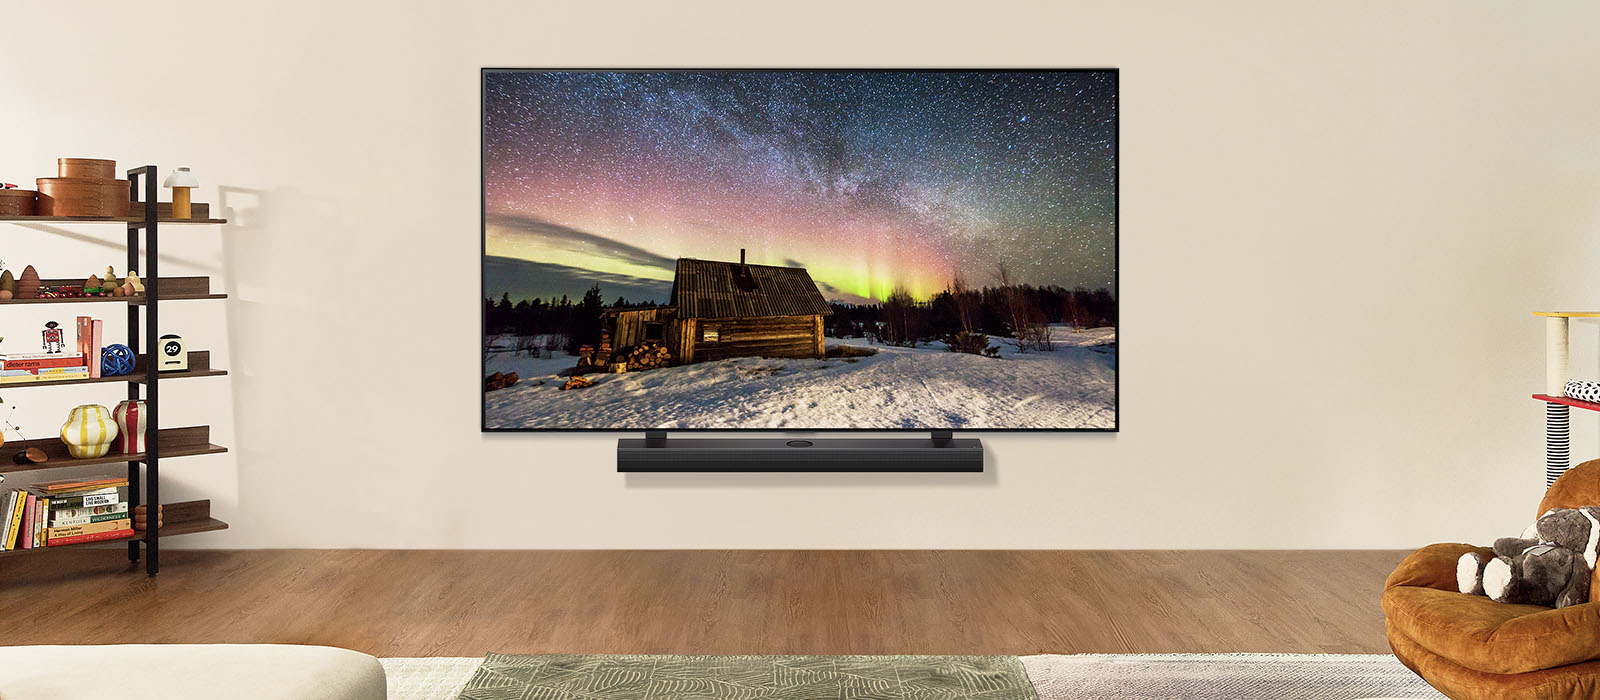 LG TV ir LG „Soundbar“ modernioje svetainėje dienos metu. Idealaus ryškumo poliarinės pašvaistės vaizdas ekrane.